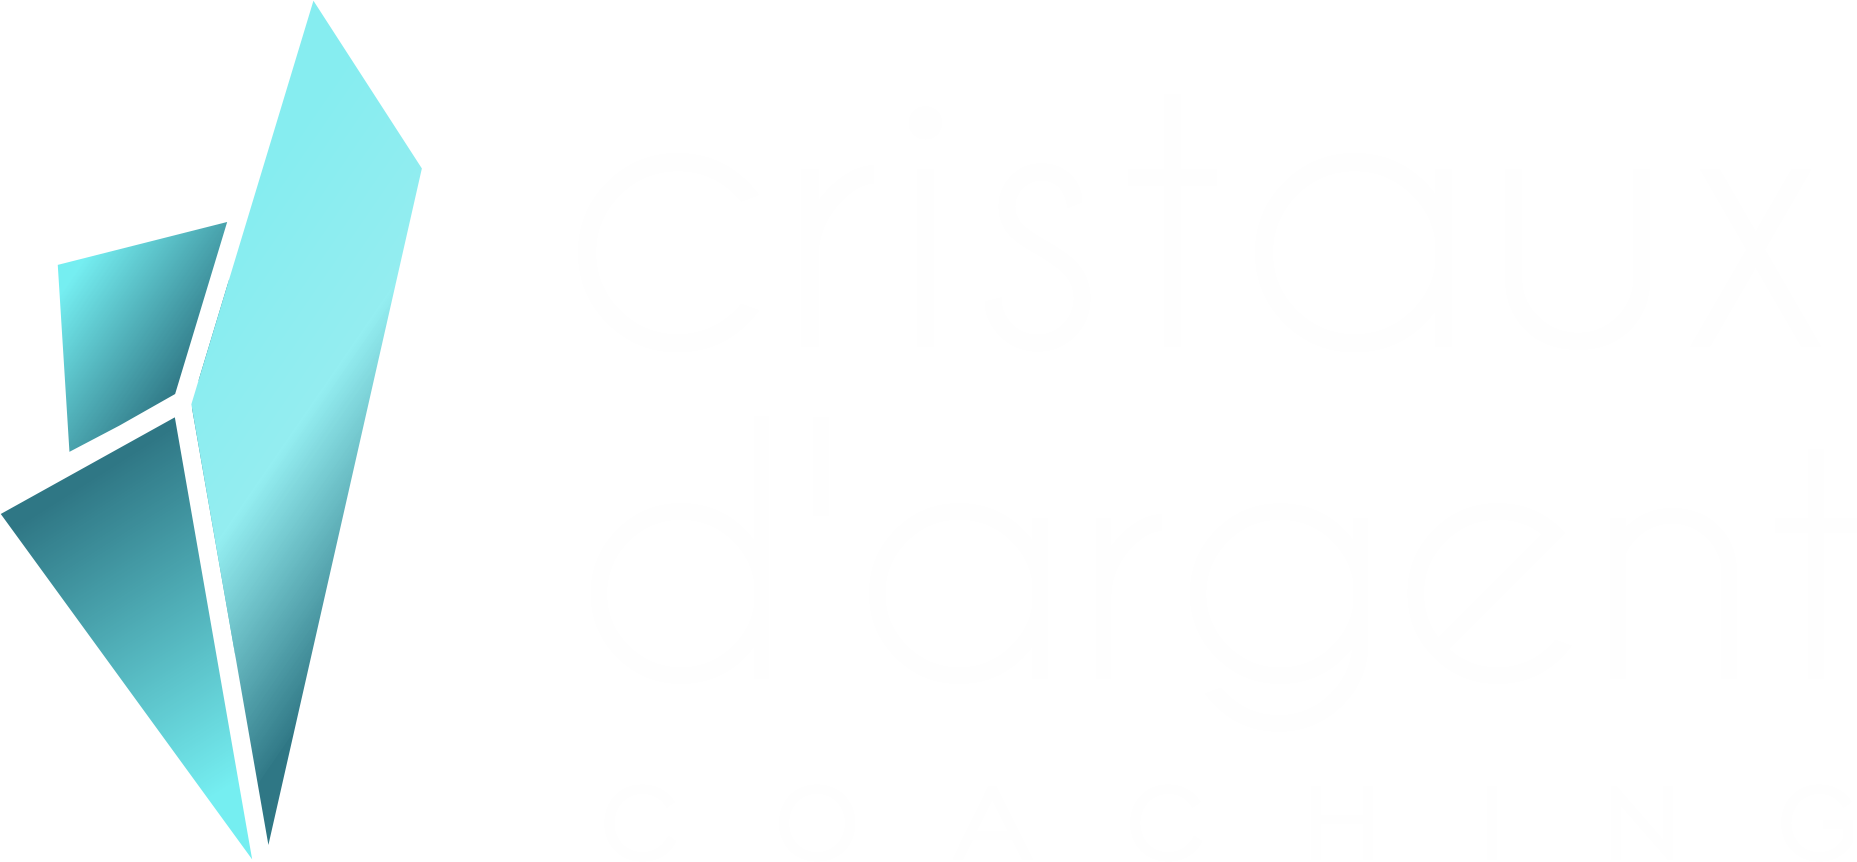 Cristaux-dargent-logo-4.png